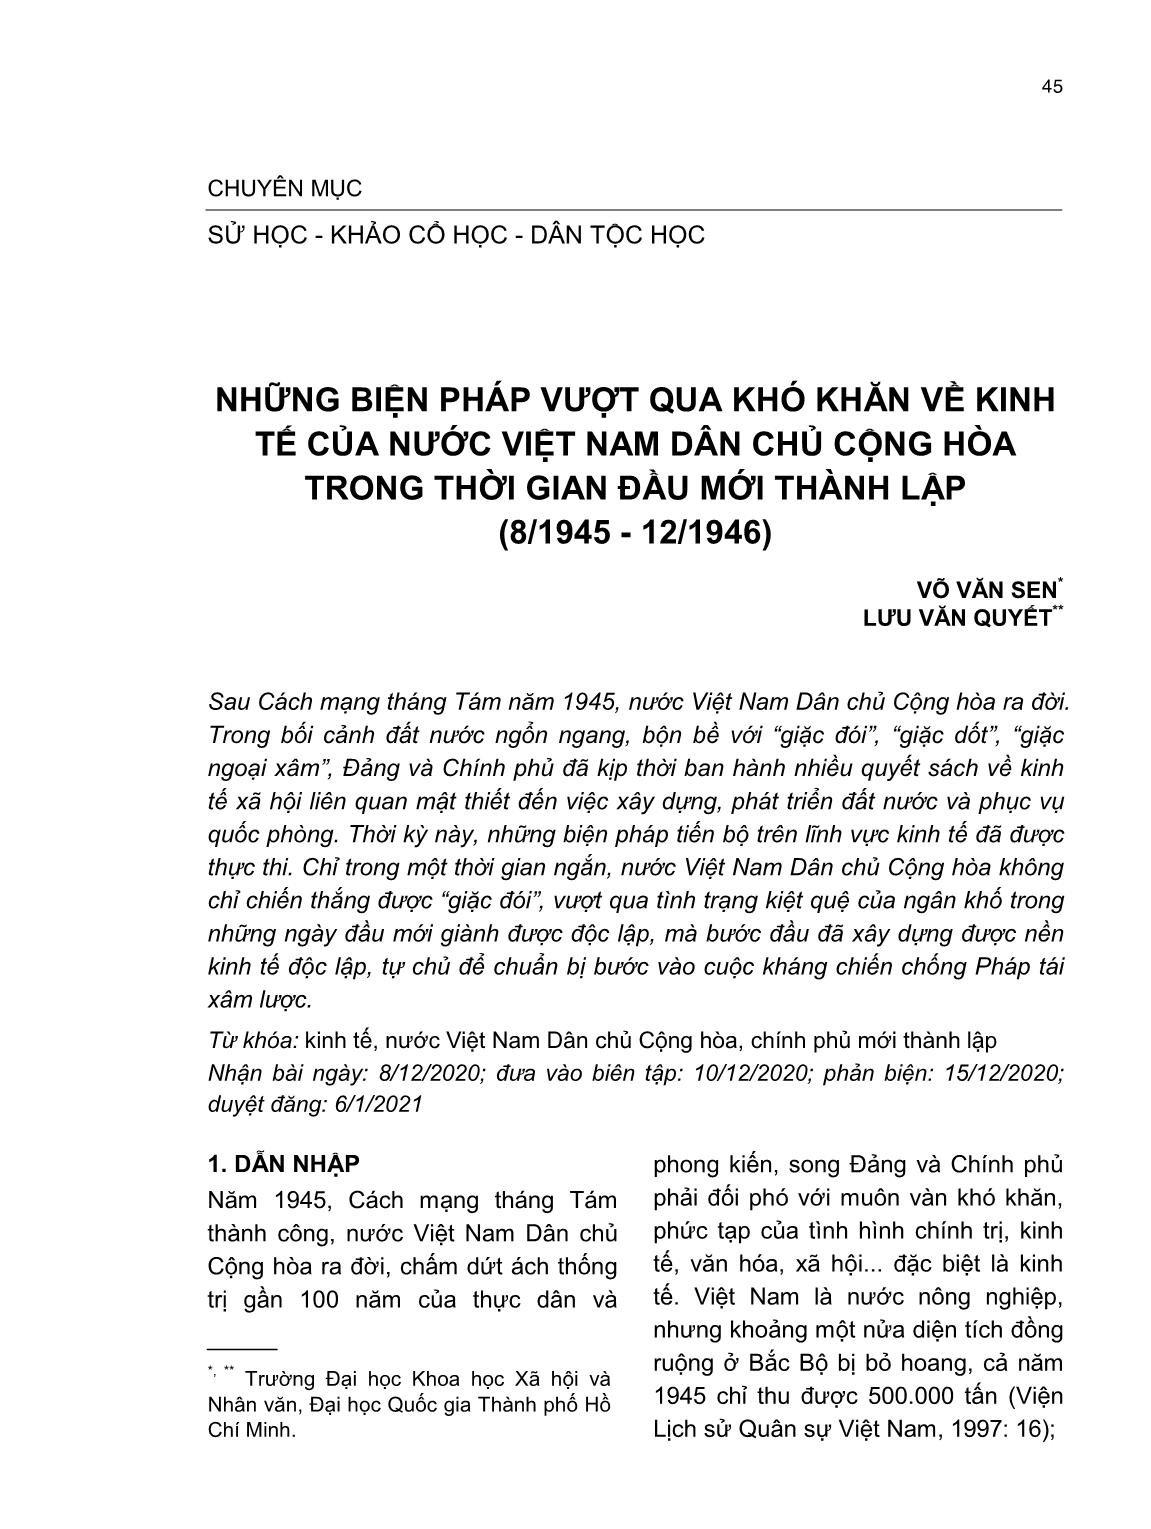 Những biện pháp vượt qua khó khăn về kinh tế của nước Việt Nam Dân chủ Cộng hòa trong thời gian đầu mới thành lập (8/1945-12/1946) trang 1